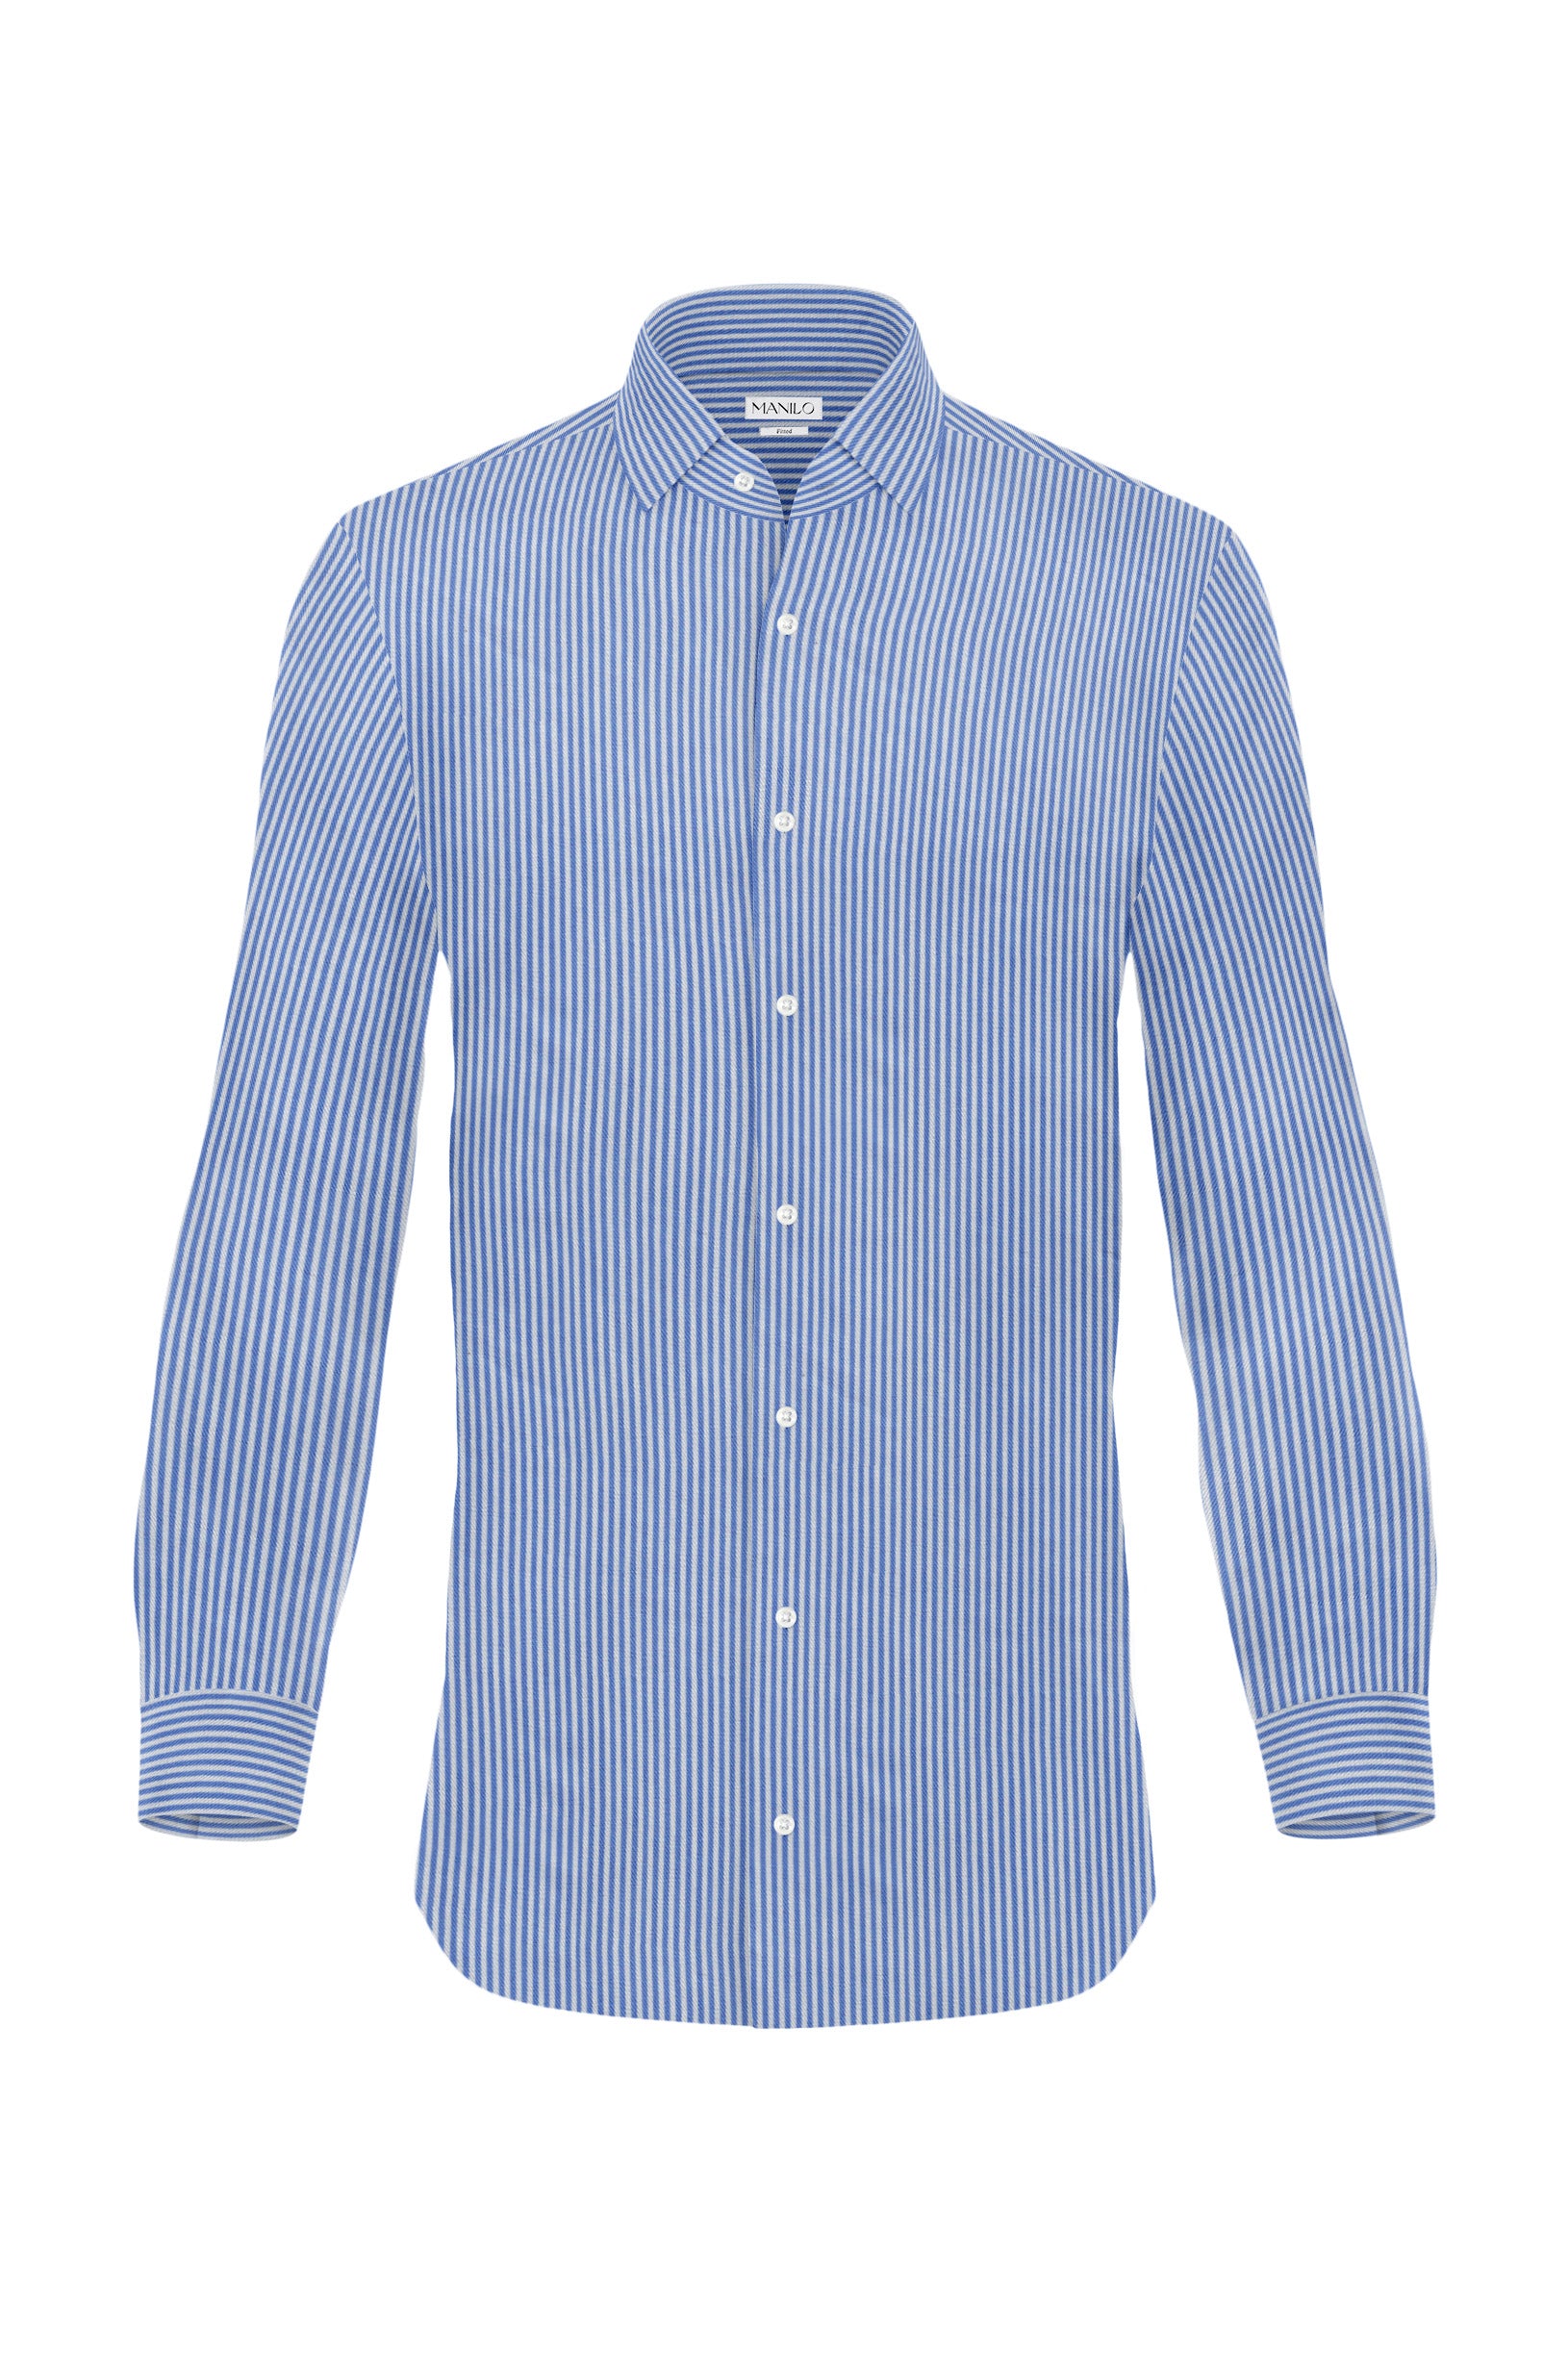 Hochwertiges Twill-Hemd Streifen Mittelblau Fitted (schmal geschnitten)